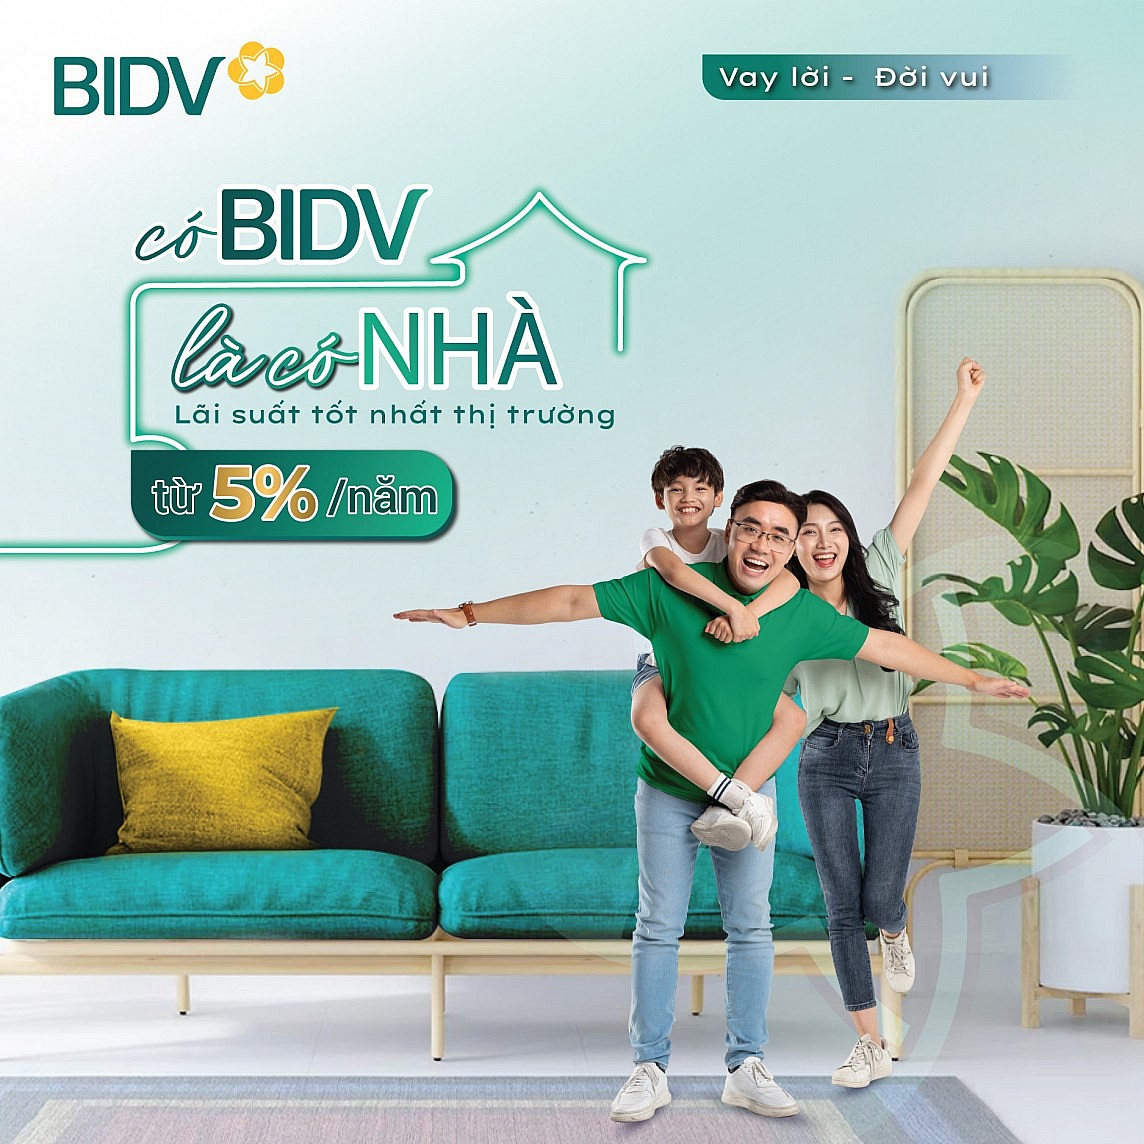 Ngân hàng BIDV cho khách hàng vay mua nhà hoặc vay trả nợ trước hạn khoản vay mua nhà ở tại ngân hàng khác, với lãi suất chỉ từ 5%/năm